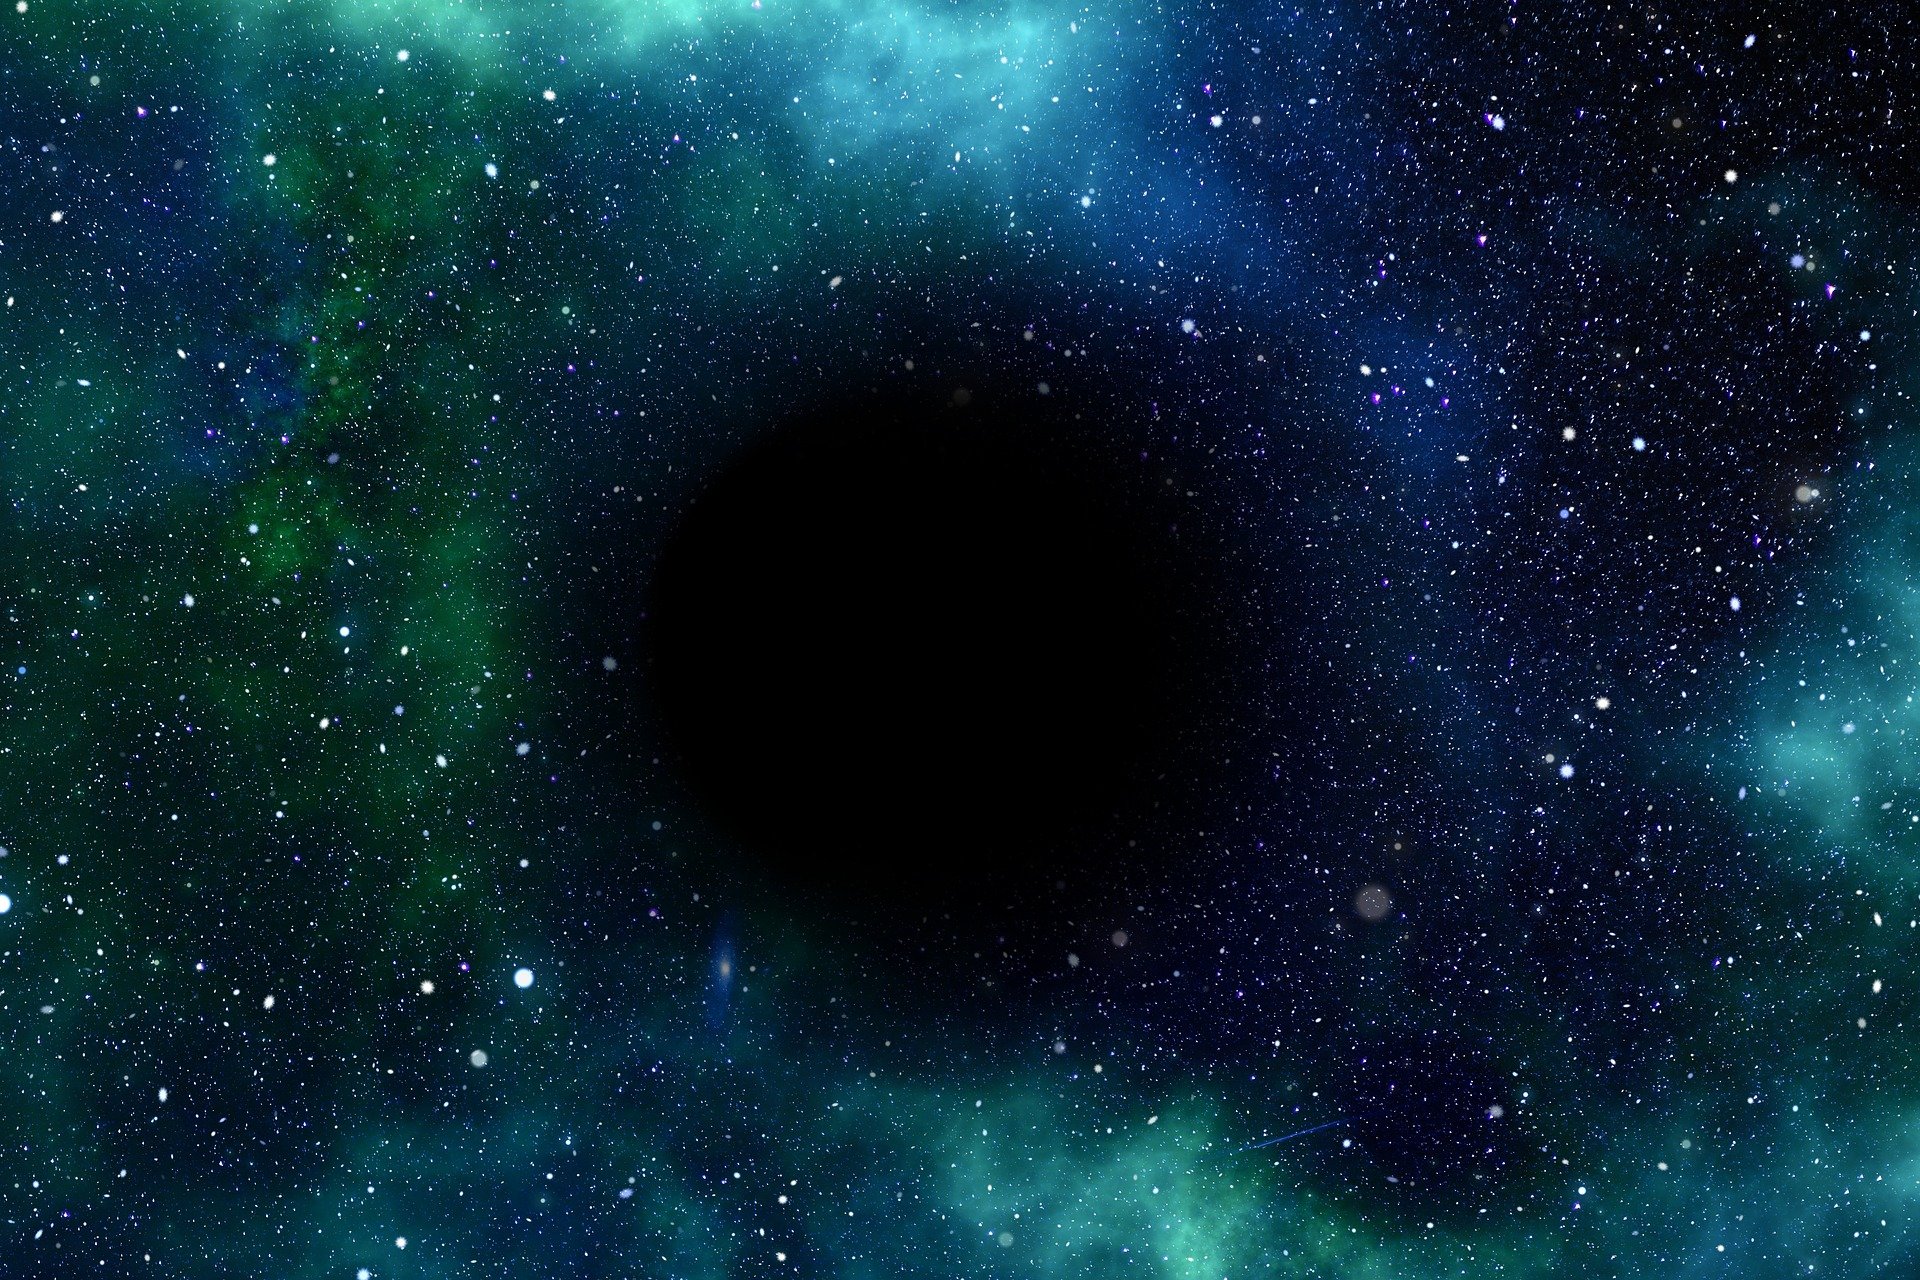 A l'univers primigeni hi havia més forats negres del que es creia